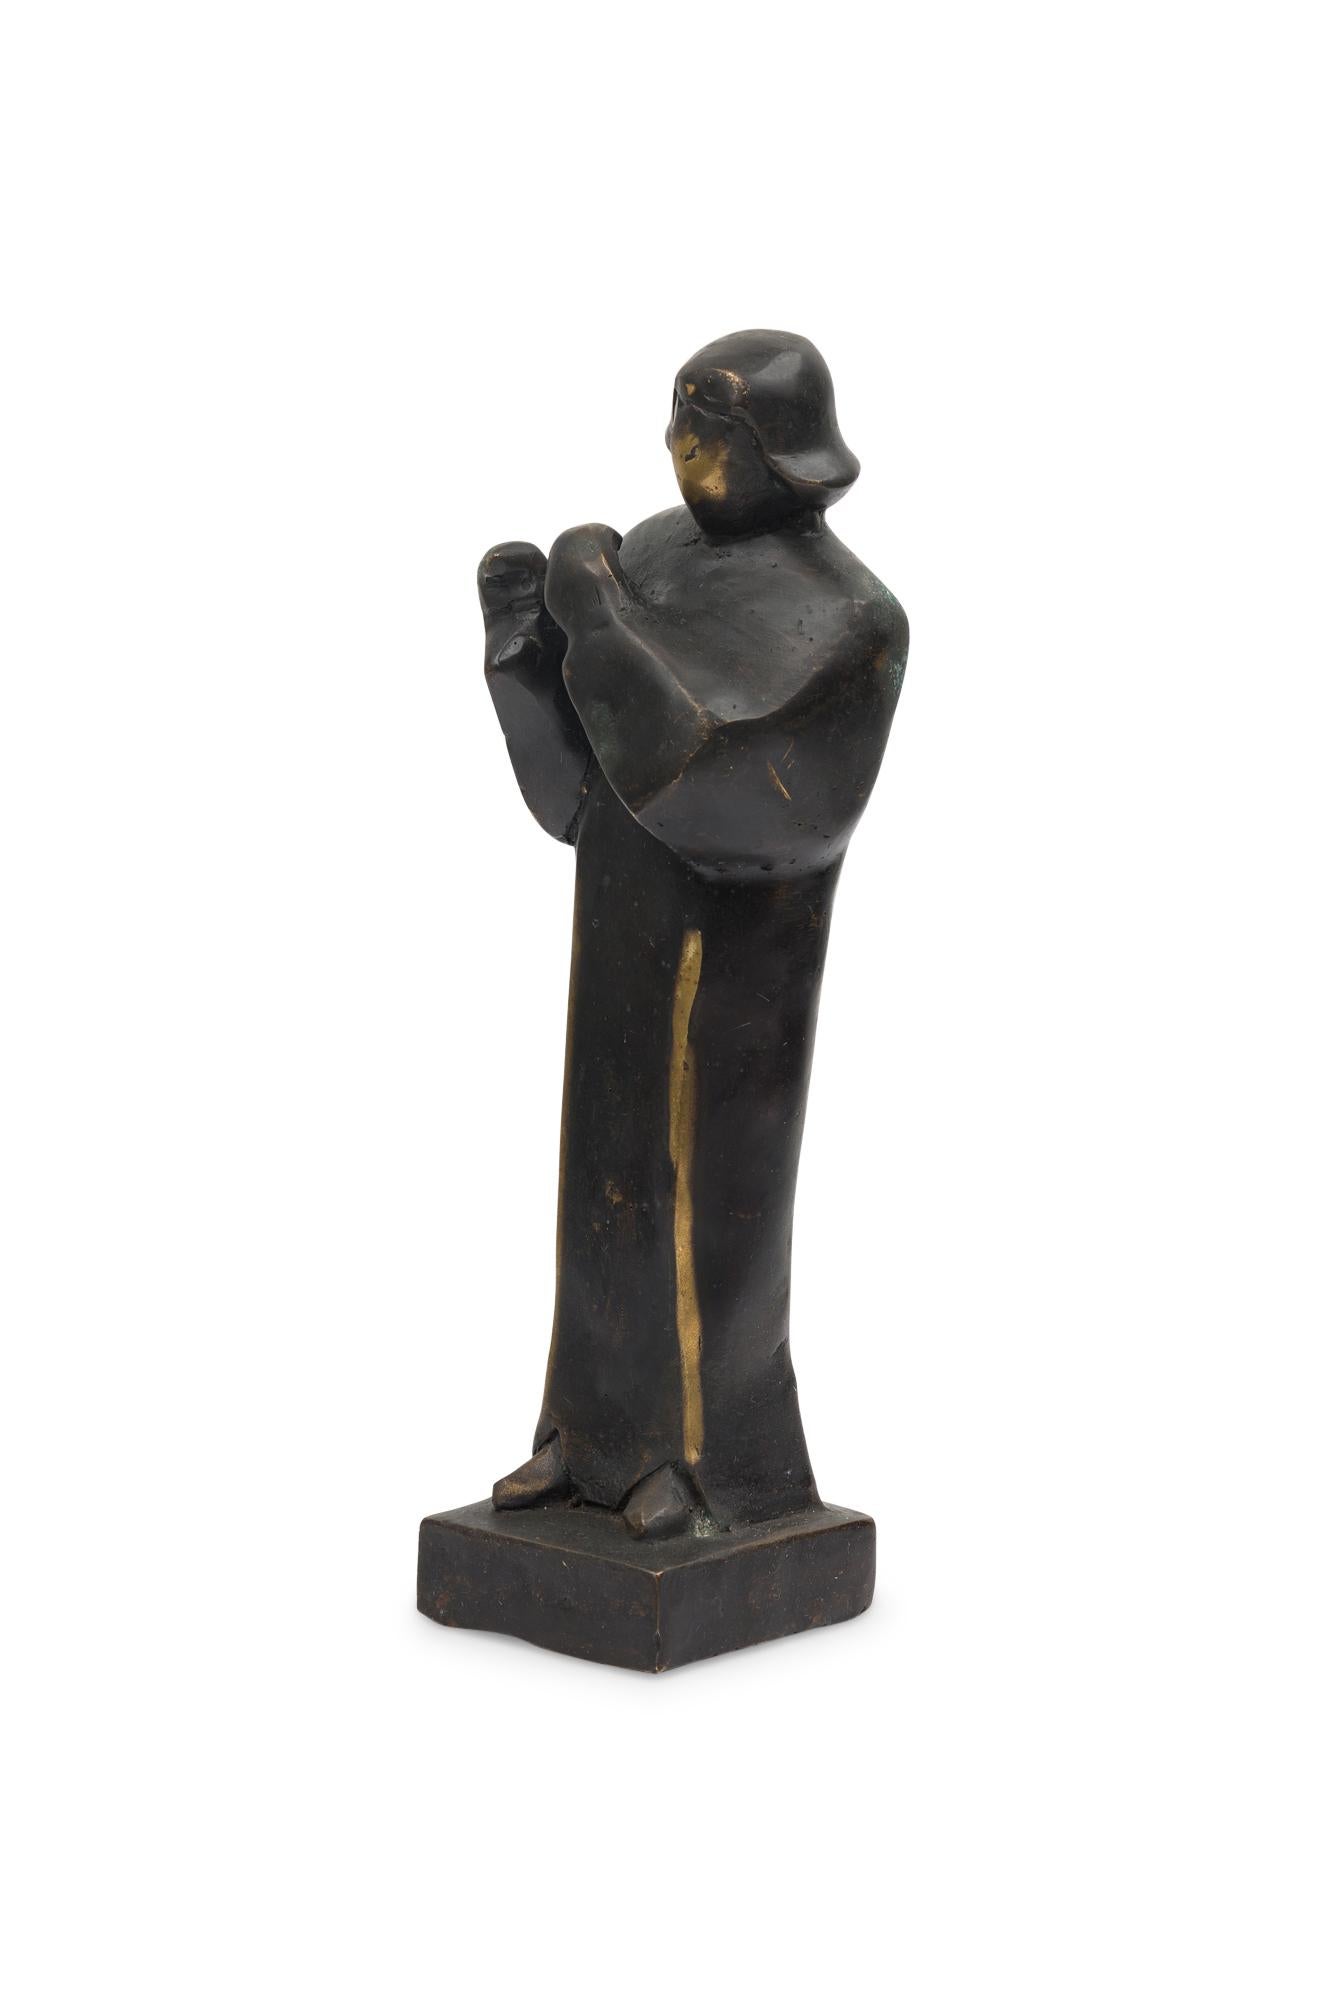 Sculpture figurative contemporaine en bronze forgé à la main, d'inspiration brutaliste, représentant un prédicateur, finie dans une patine ébénisée. (PRIX CHACUN) (